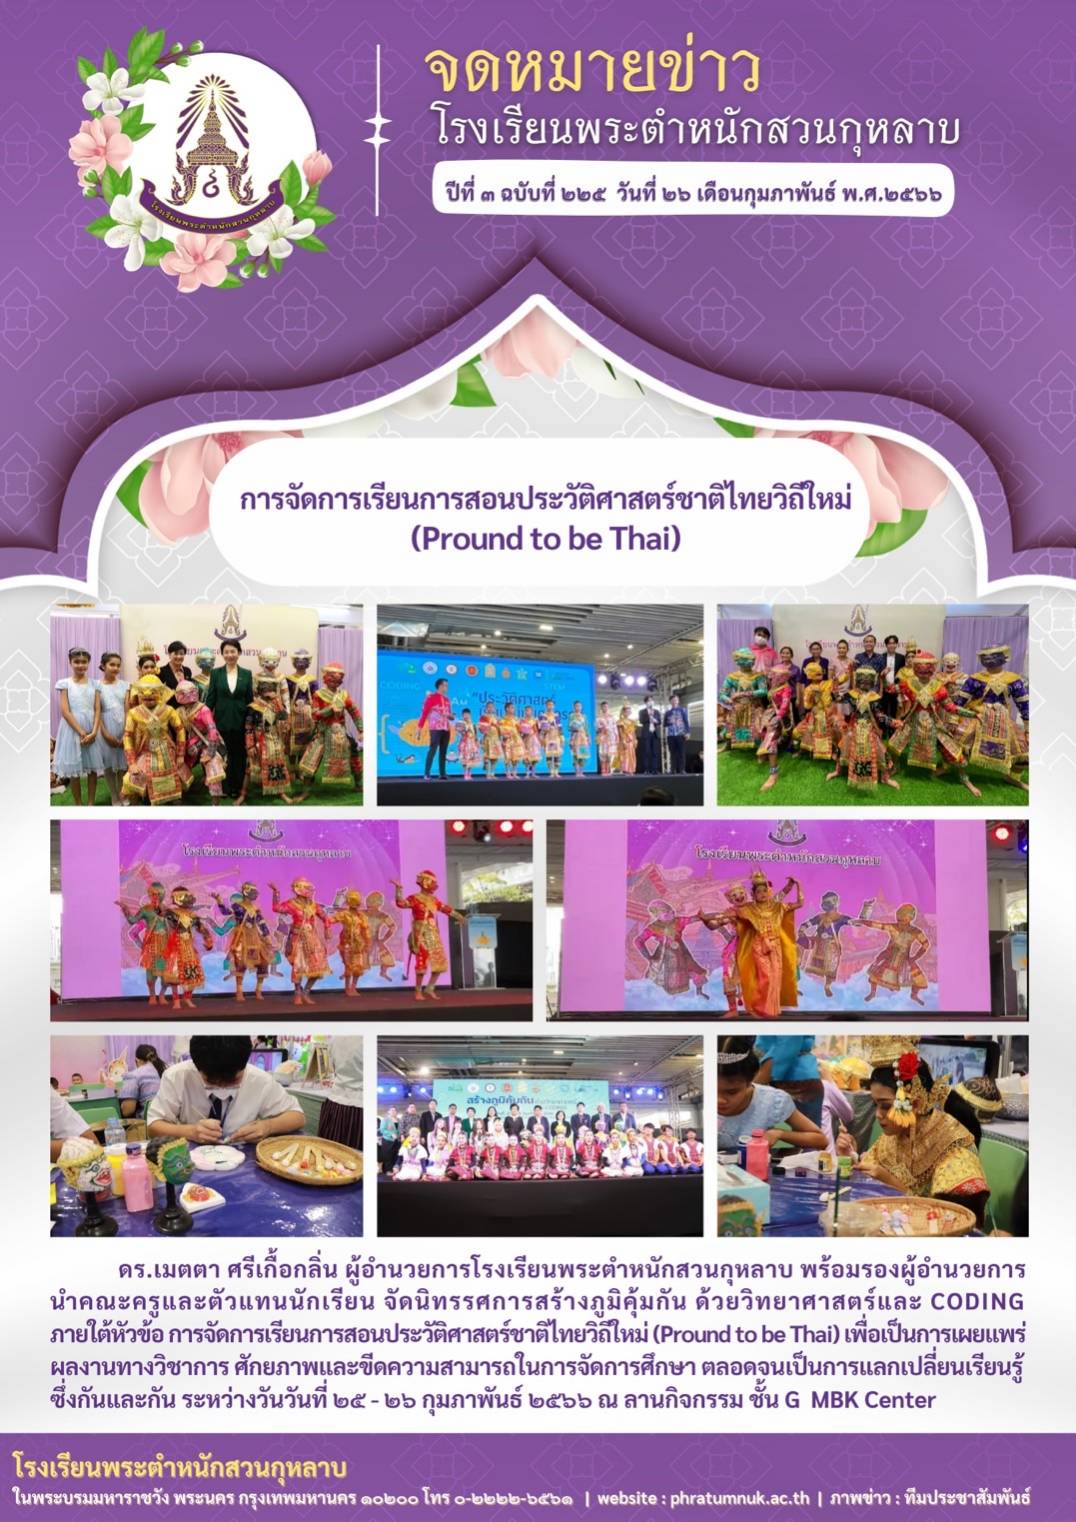 จดหมายข่าวโรงเรียนพระตำหนักสวนกุหลาบปีที่ ๓ ฉบับที่ ๒๒๕ วันที่ ๒๖ เดือนกุมภาพันธ์ พ.ศ.๒๕๖๖ การจัดการเรียนการสอนประวัติศาสตร์ชาติไทยวิถีใหม่ (Pround to be Thai)